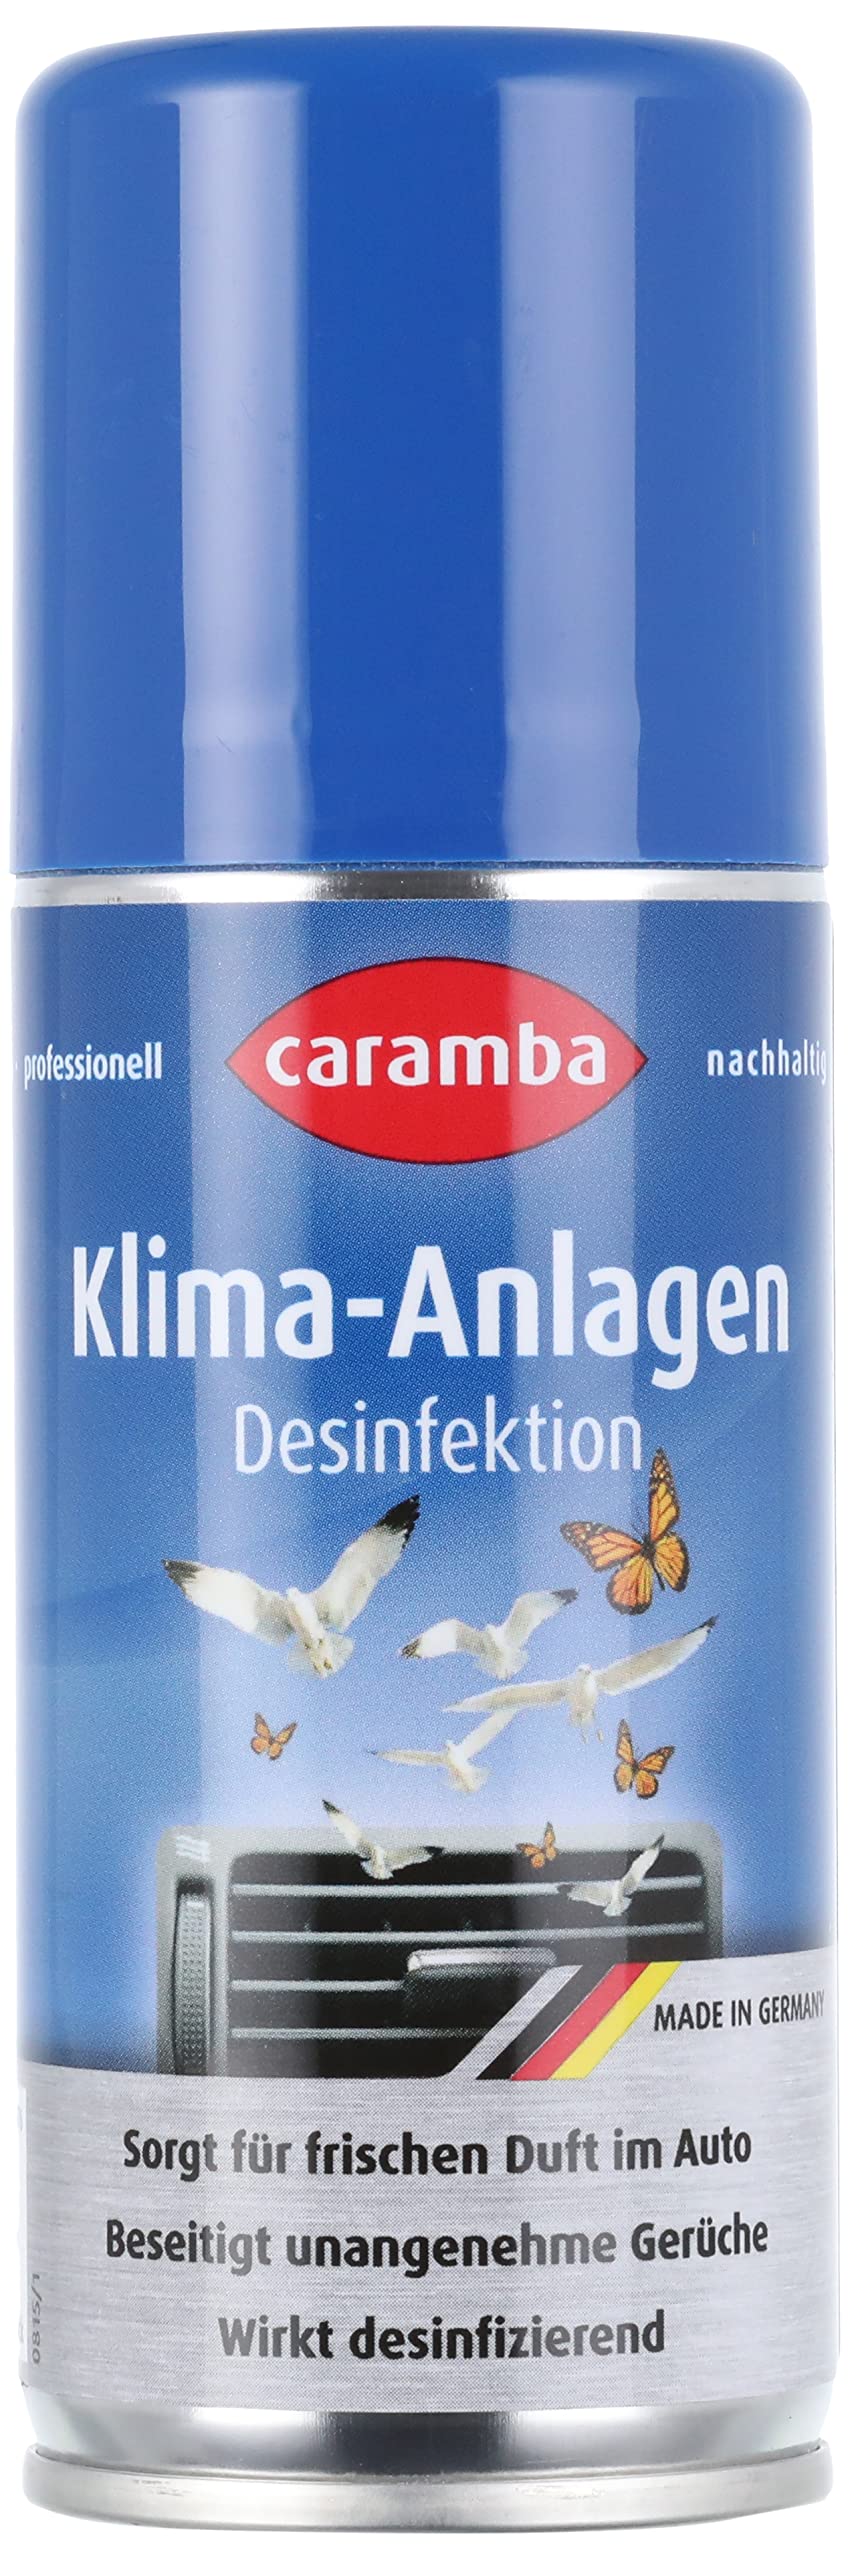 Caramba Easy Clean Klimaanlagen Desinfektion (100 ml) – Desinfektionsmittel gegen Bakterien und Pilze in Auto Klimaanlagen – Hygienespray für angenehm frischen Zitrusduft im Auto von Caramba